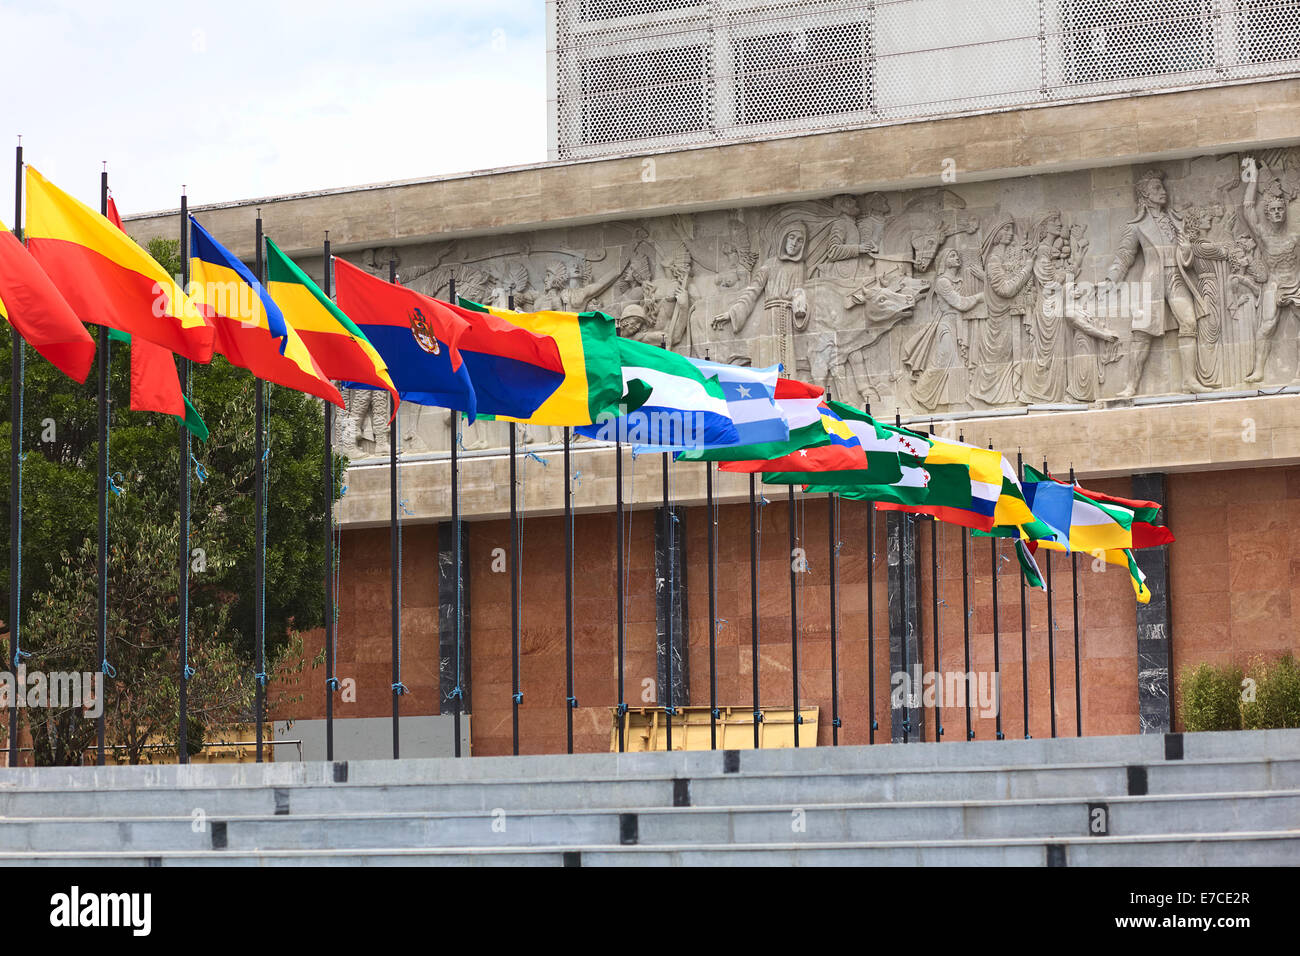 QUITO, ÉQUATEUR - 6 août 2014 : Drapeaux à côté de l'entrée de l'immeuble de l'Asamblea Nacional (Assemblée nationale) Banque D'Images